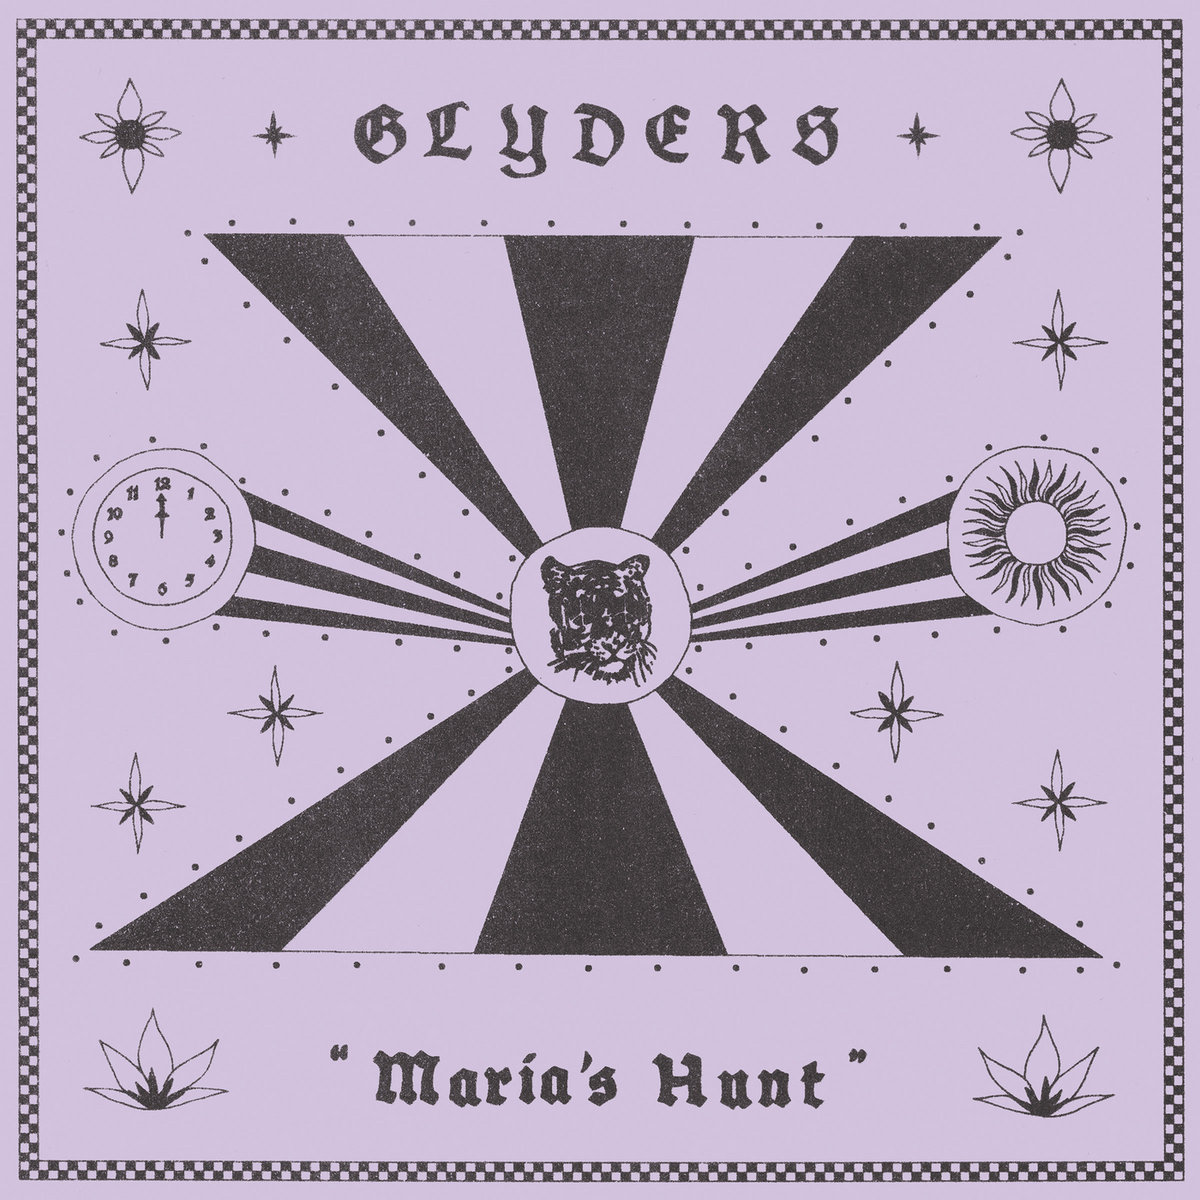 Glyders-–-Marias-Hunt Glyders - Maria's Hunt